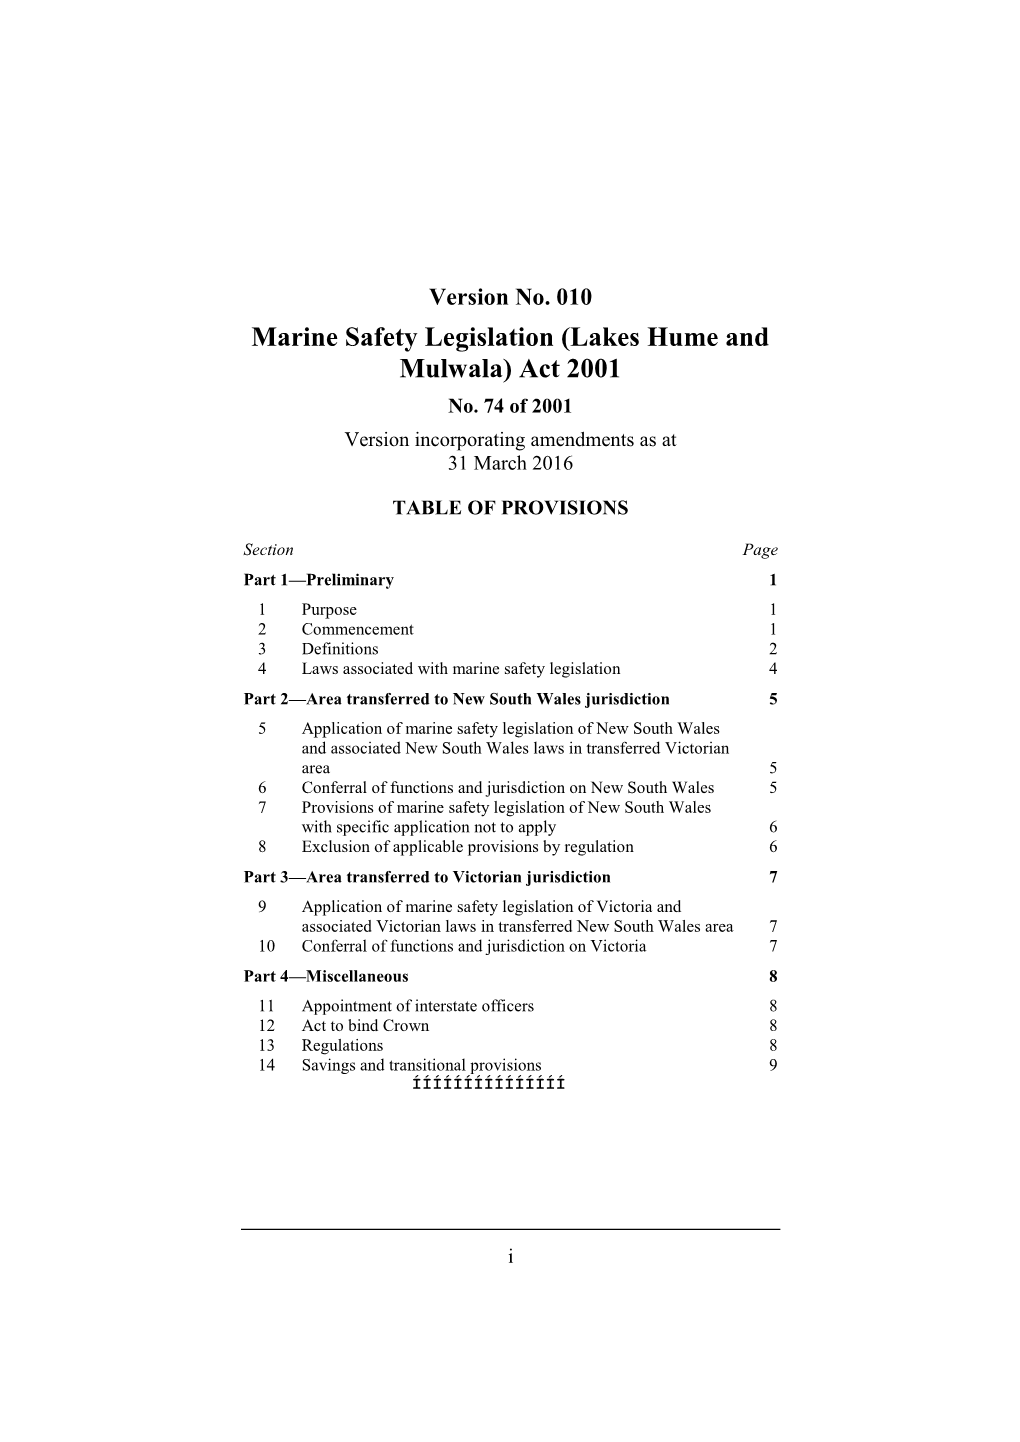 Marine Safety Legislation (Lakes Hume and Mulwala) Act 2001 No